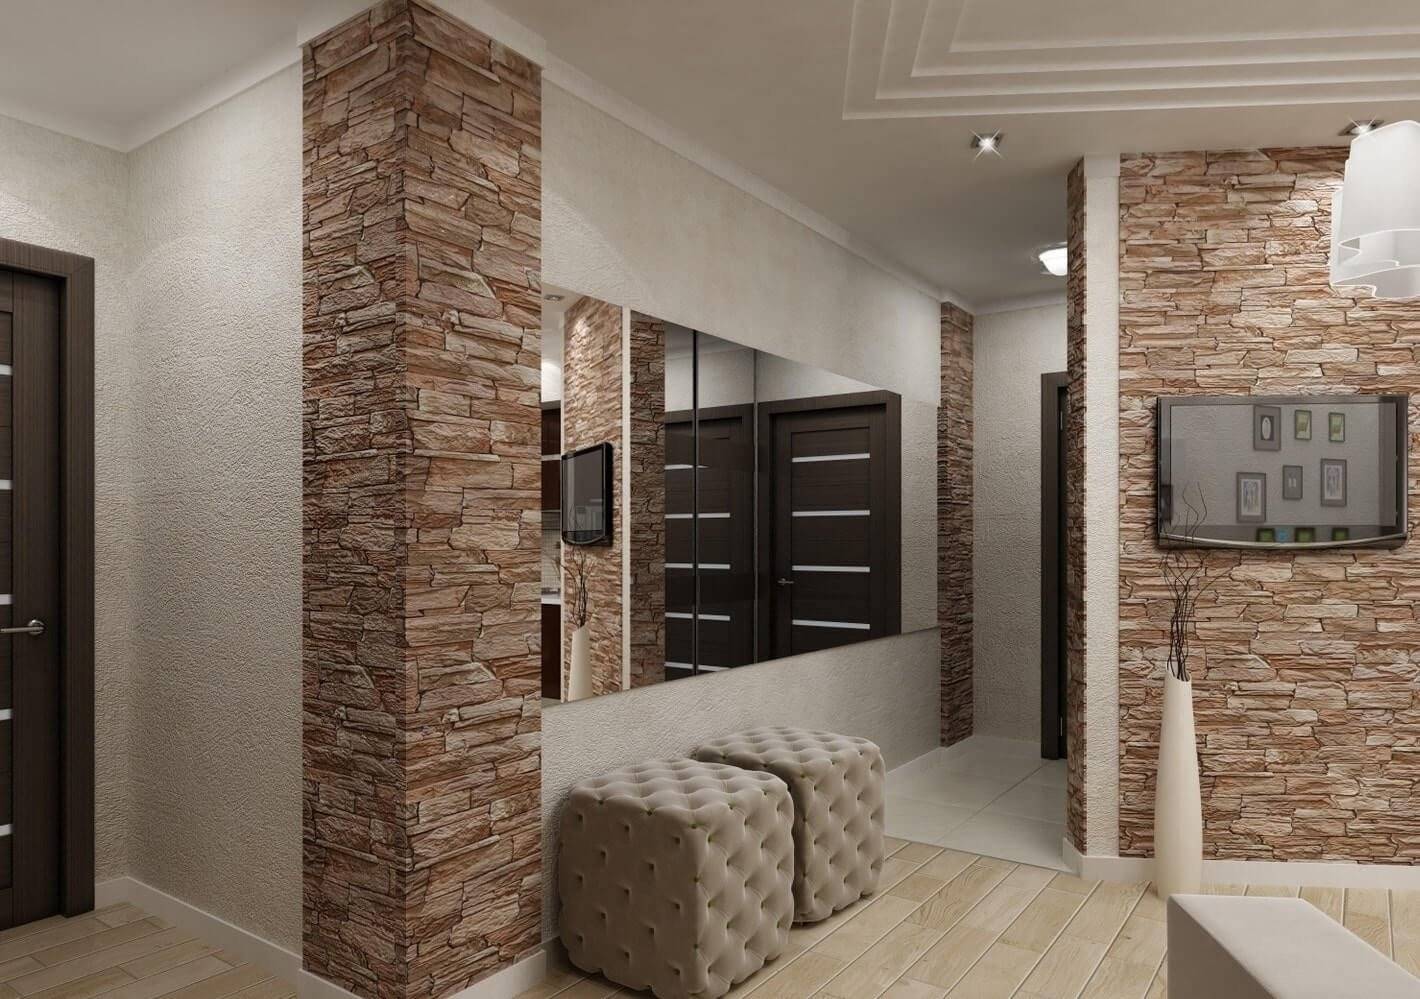 Декоративный камень в интерьере (85 фото) - красивые идеи дизайна для разных комнат